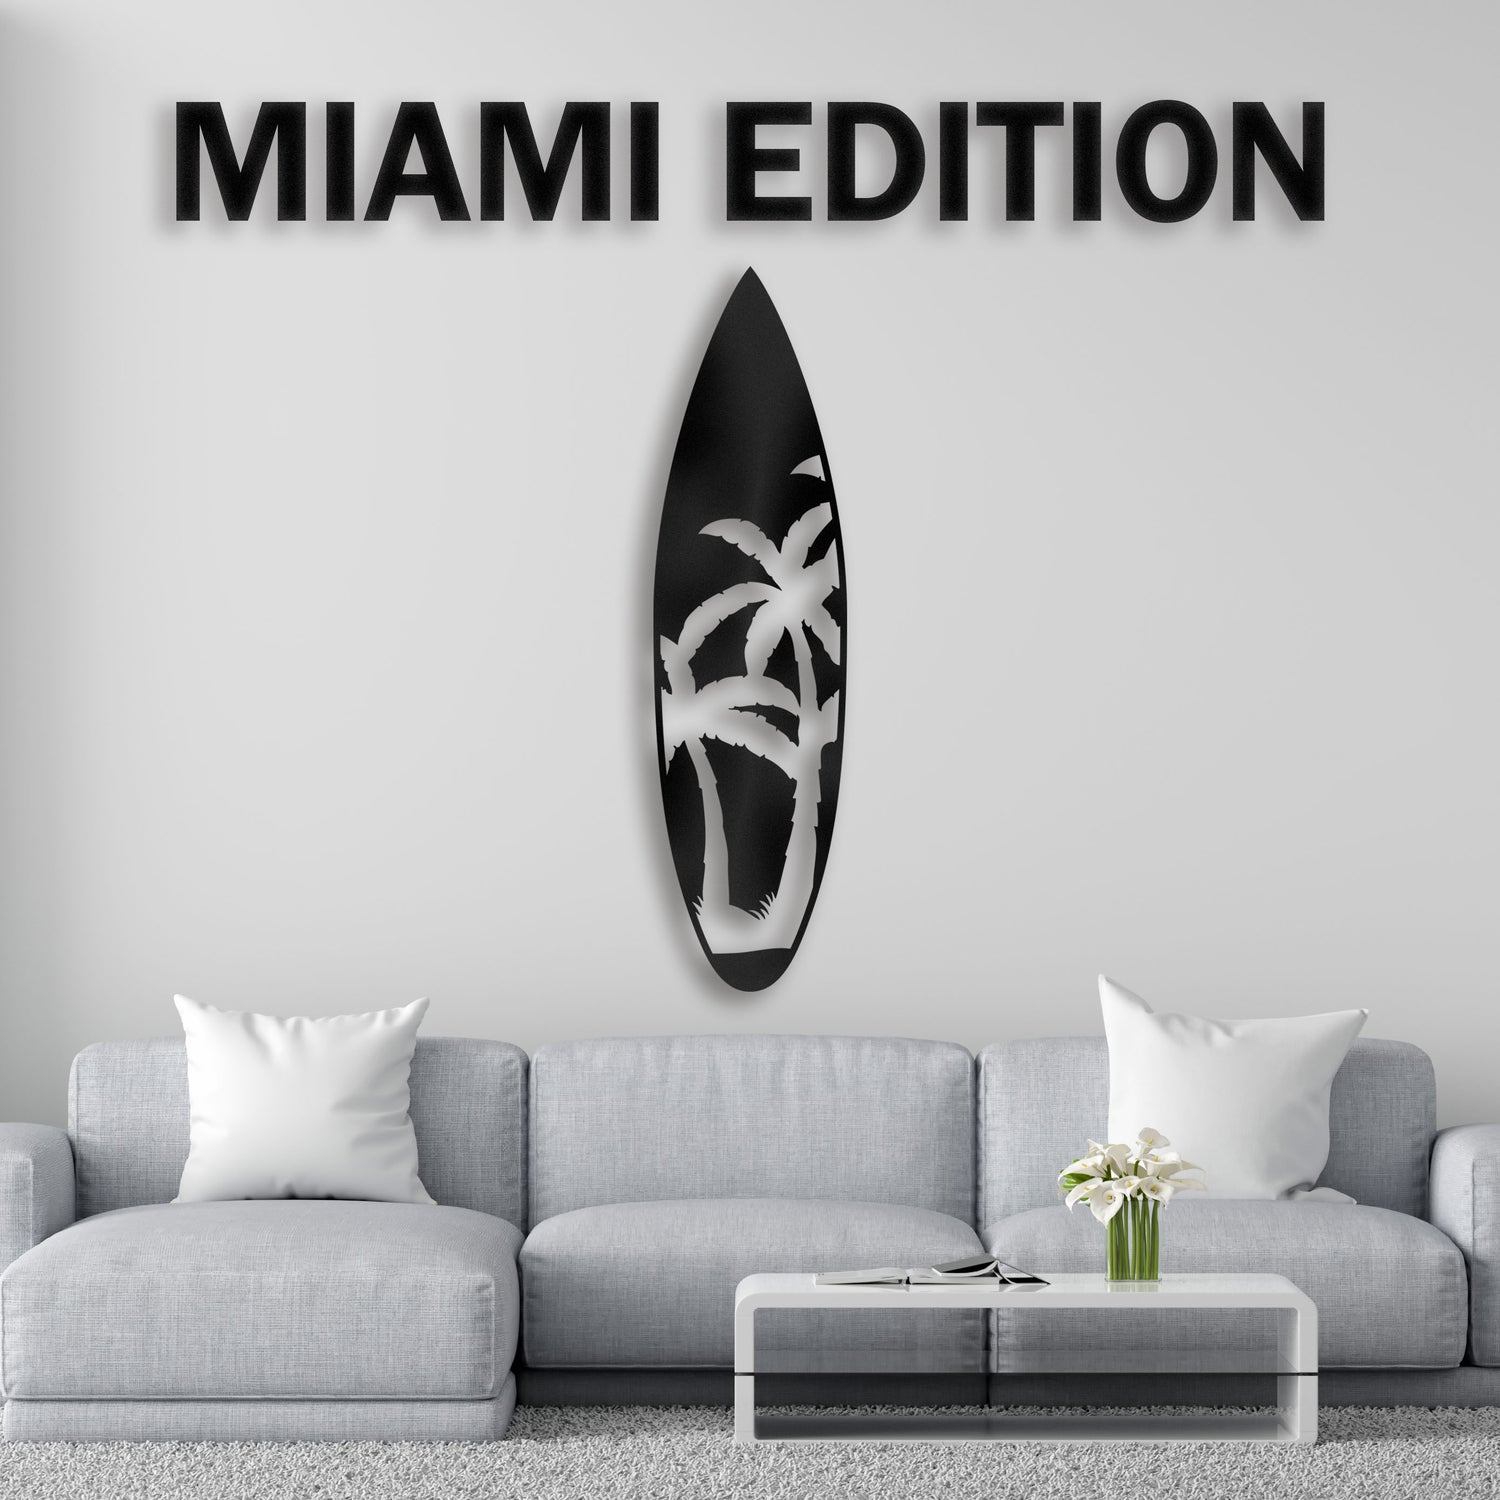 Miami Edition